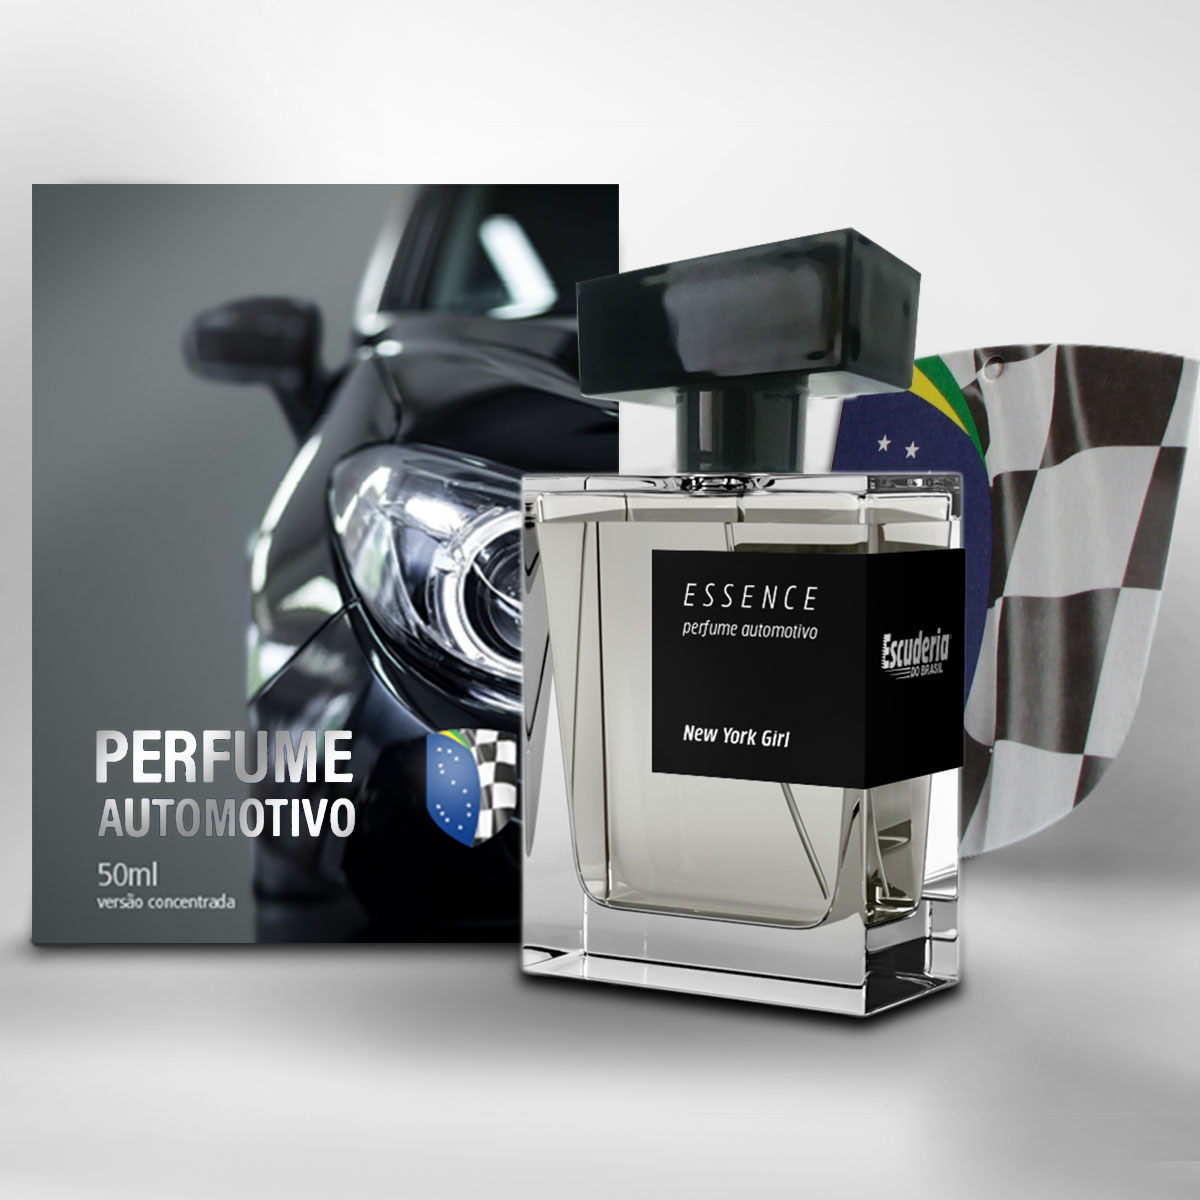 Perfume automotivo concentrado 50ml New York Girl - Escuderia do Brasil